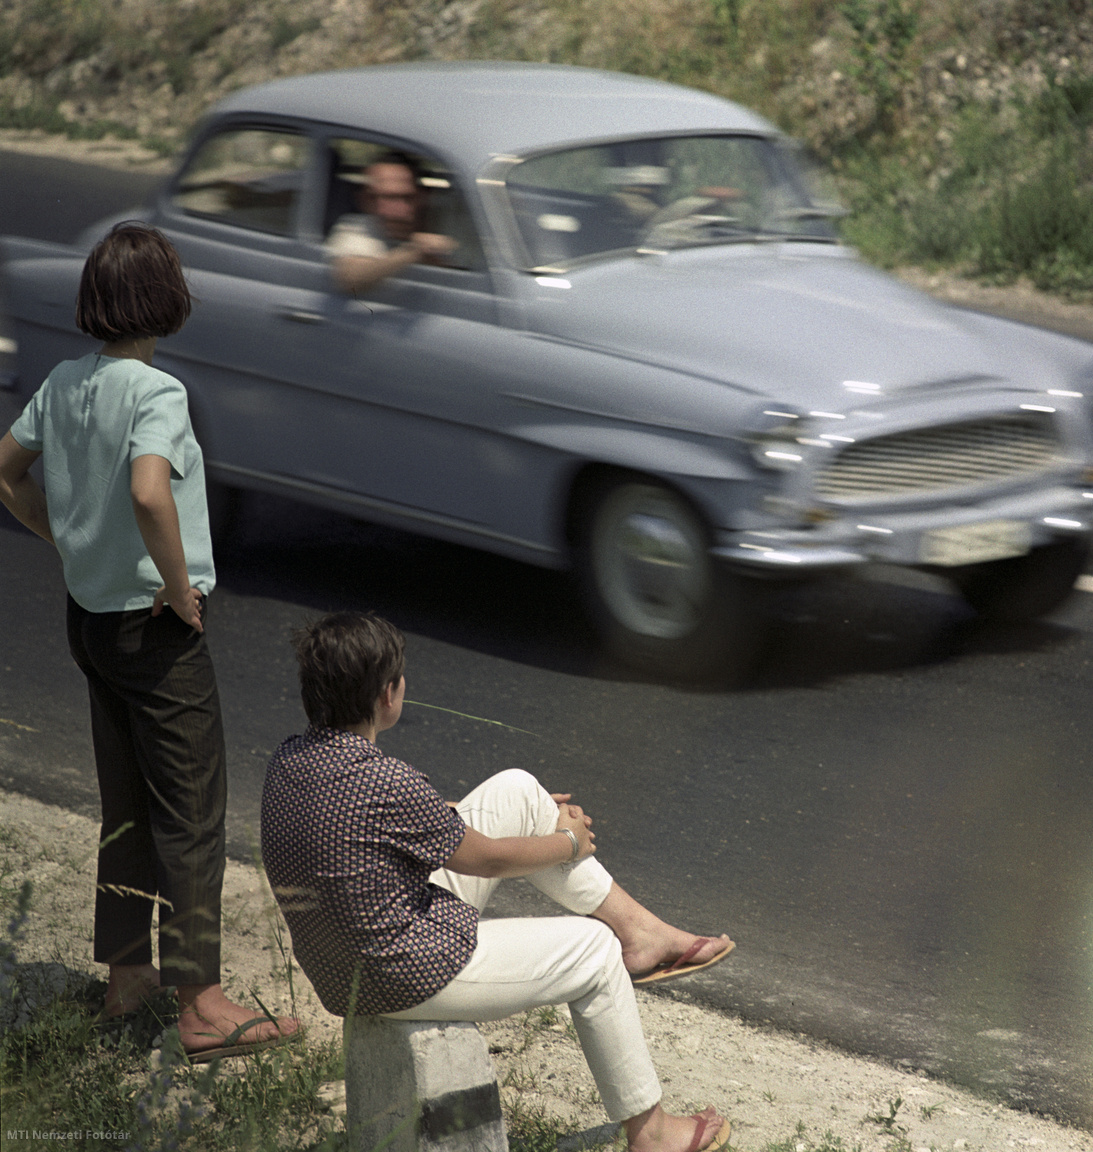 Magyarország, 1964. június 14. Fiatalok várakoznak a balatoni országút mellett, hogy egy gépkocsi felvegye őket és eljuthassanak úti céljukhoz. A felvétel készítésének pontos helye ismeretlen.